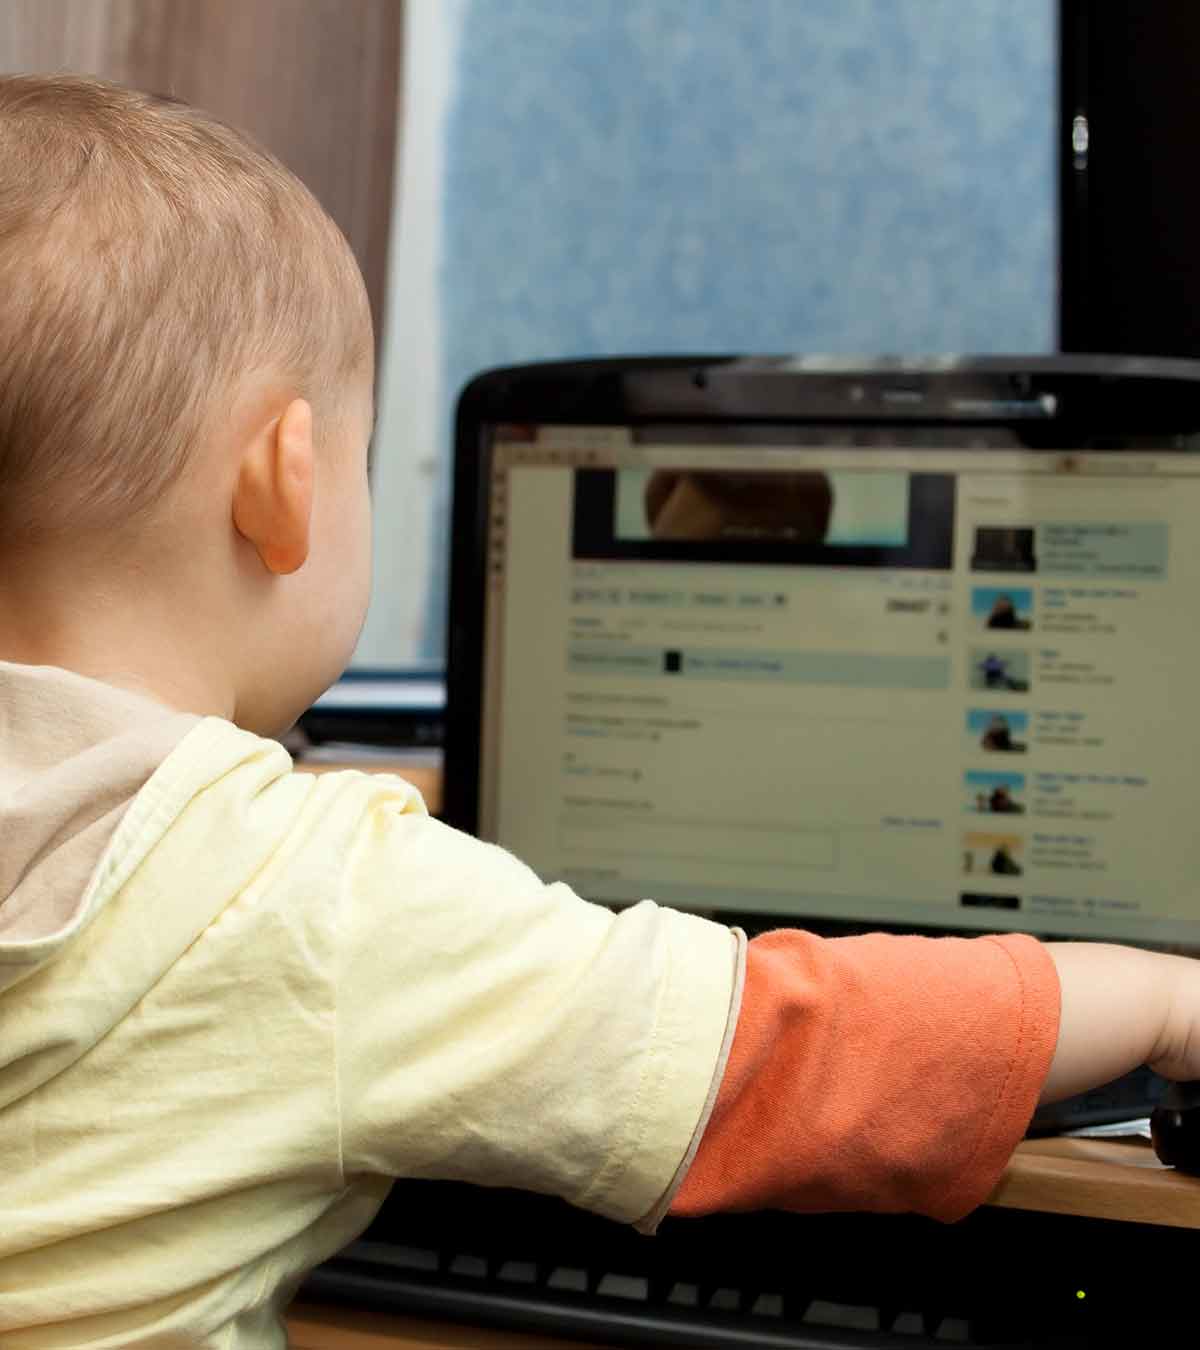 社交媒体对儿童的影响:正面与负面